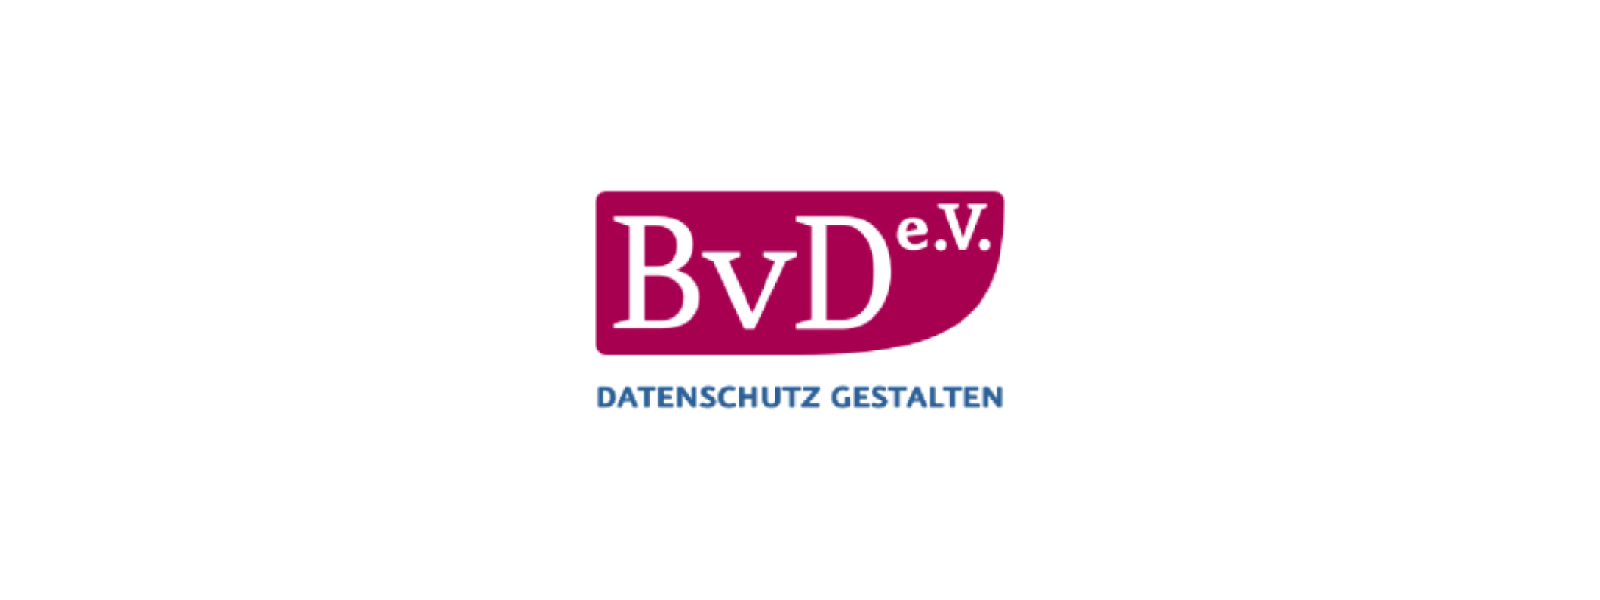 BVD-Blog-Bild (002)